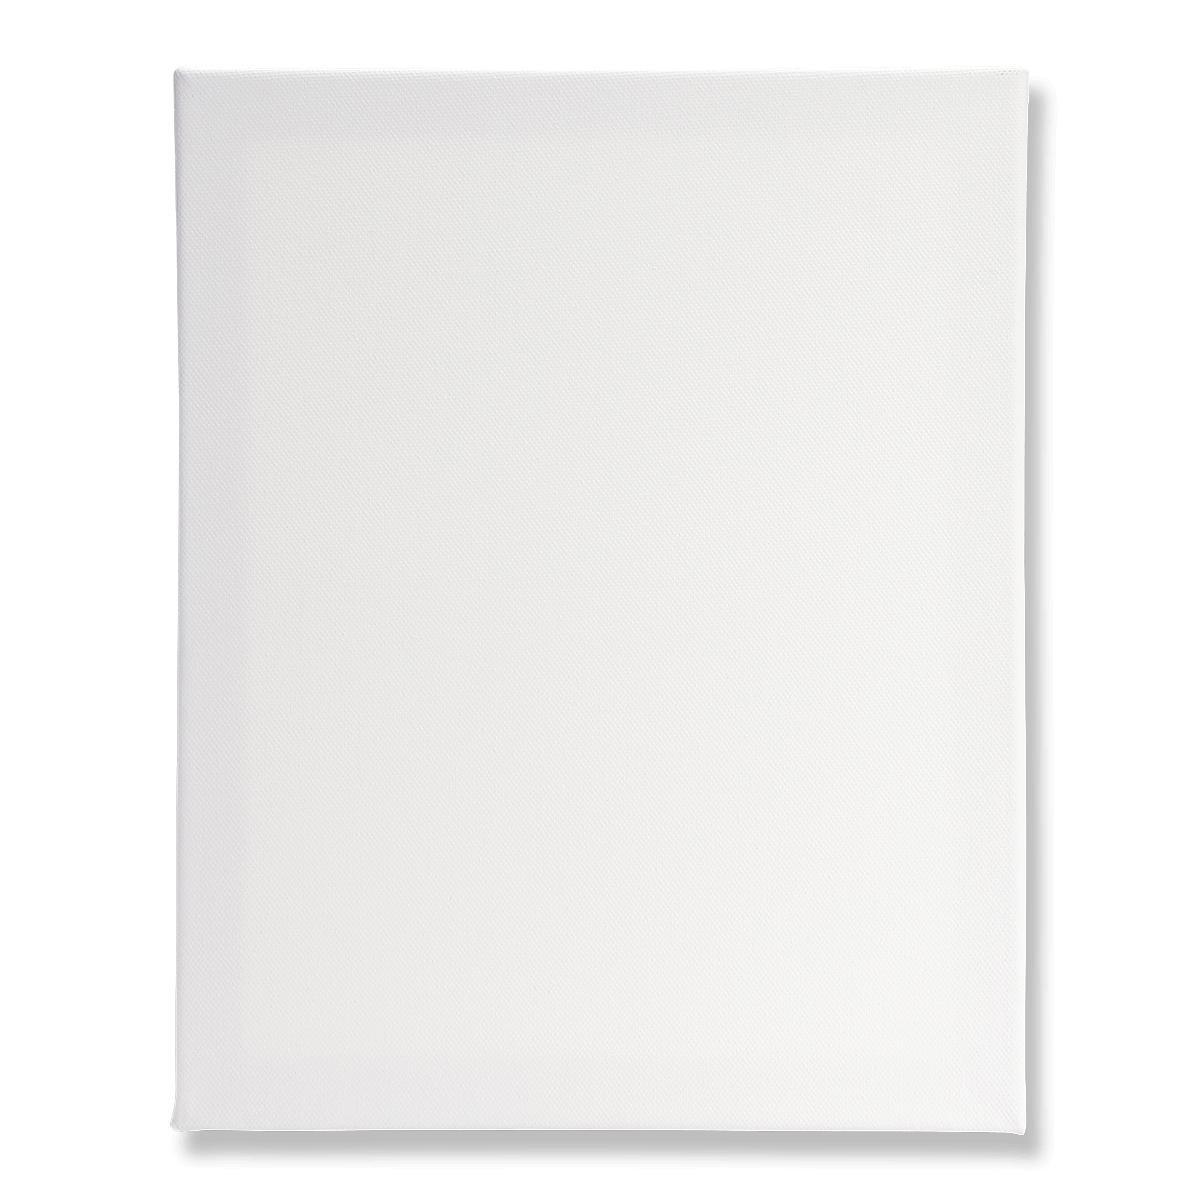 White artist canvas. 35 x 28 cm